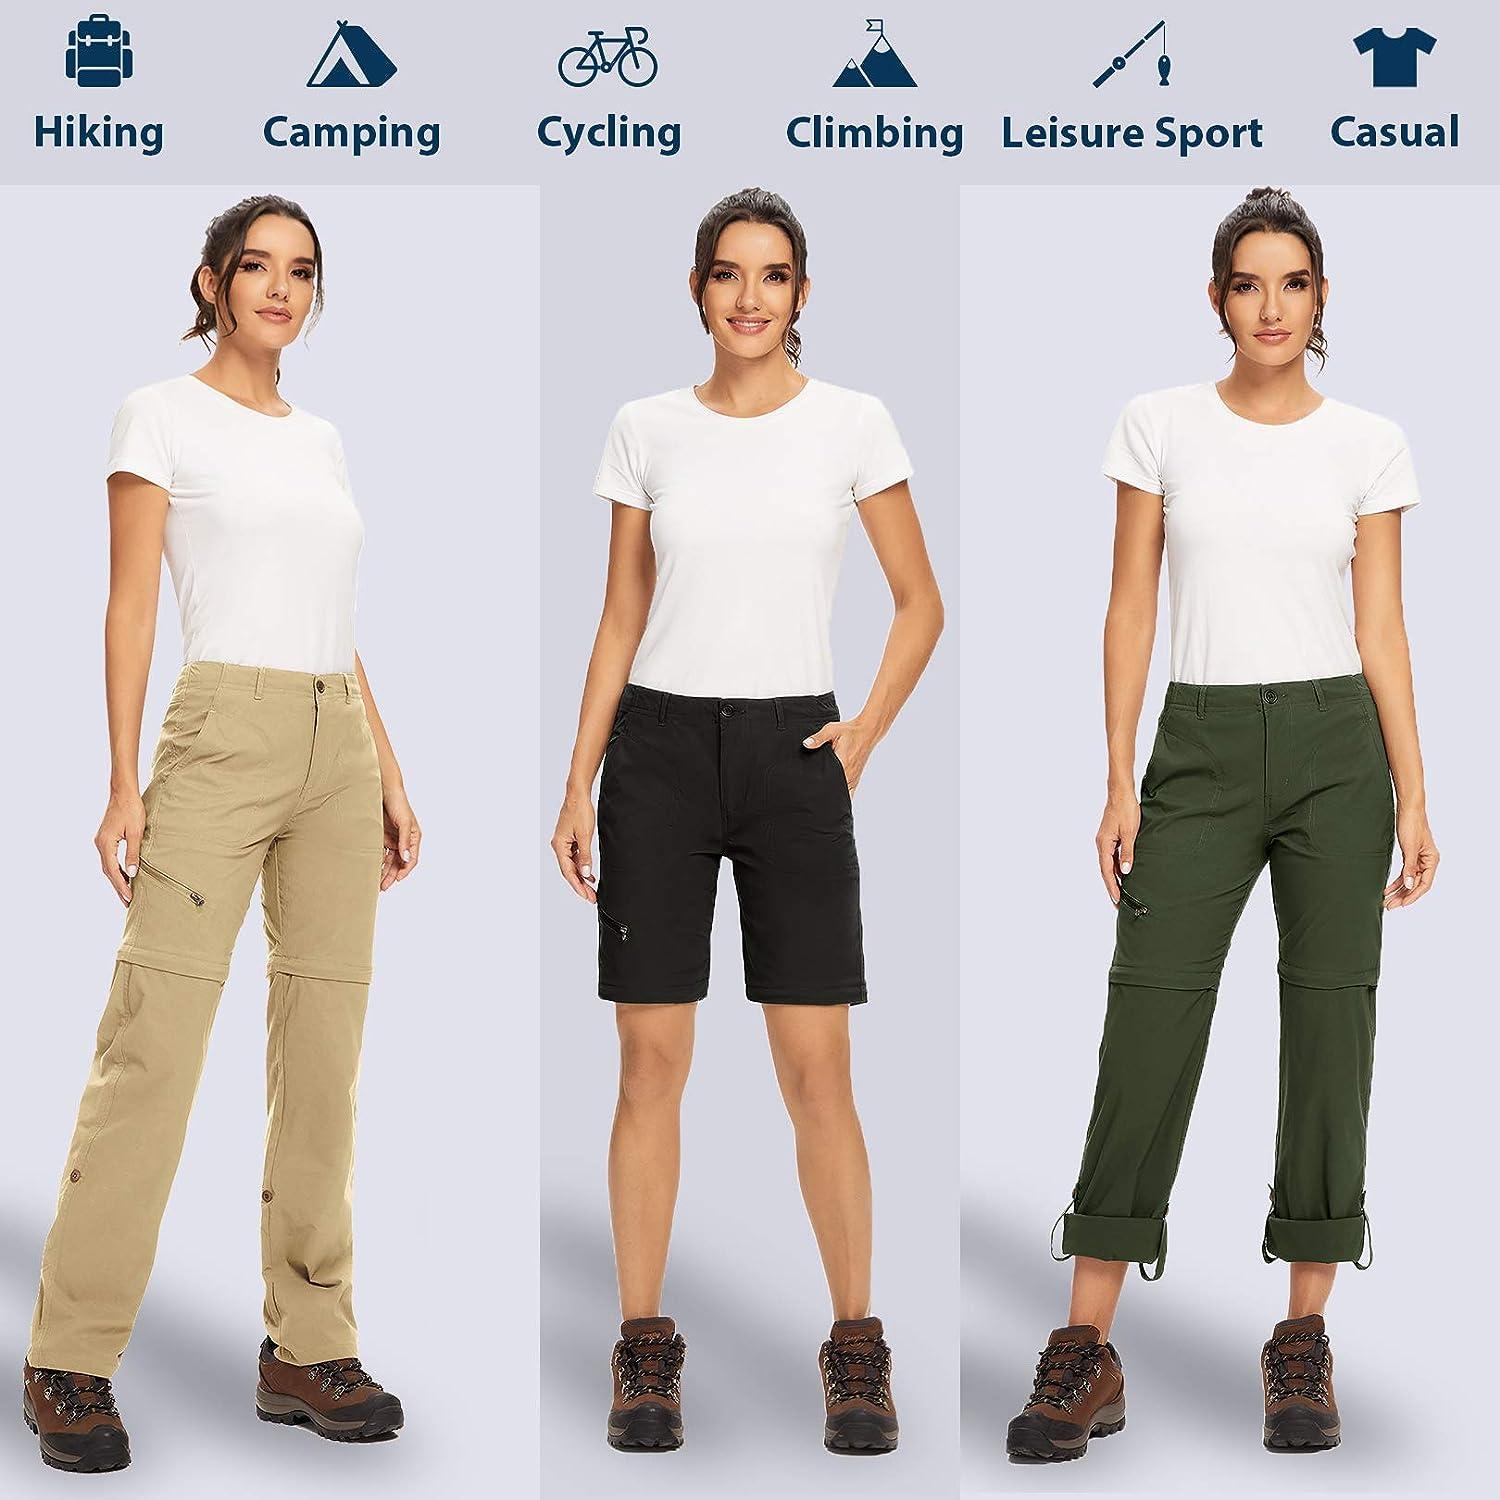 Toomett Women's Hiking Cargo Pants Convertible Quick Dry UPF50+ Waterproof  Capri Fishing Safari Travel Pants